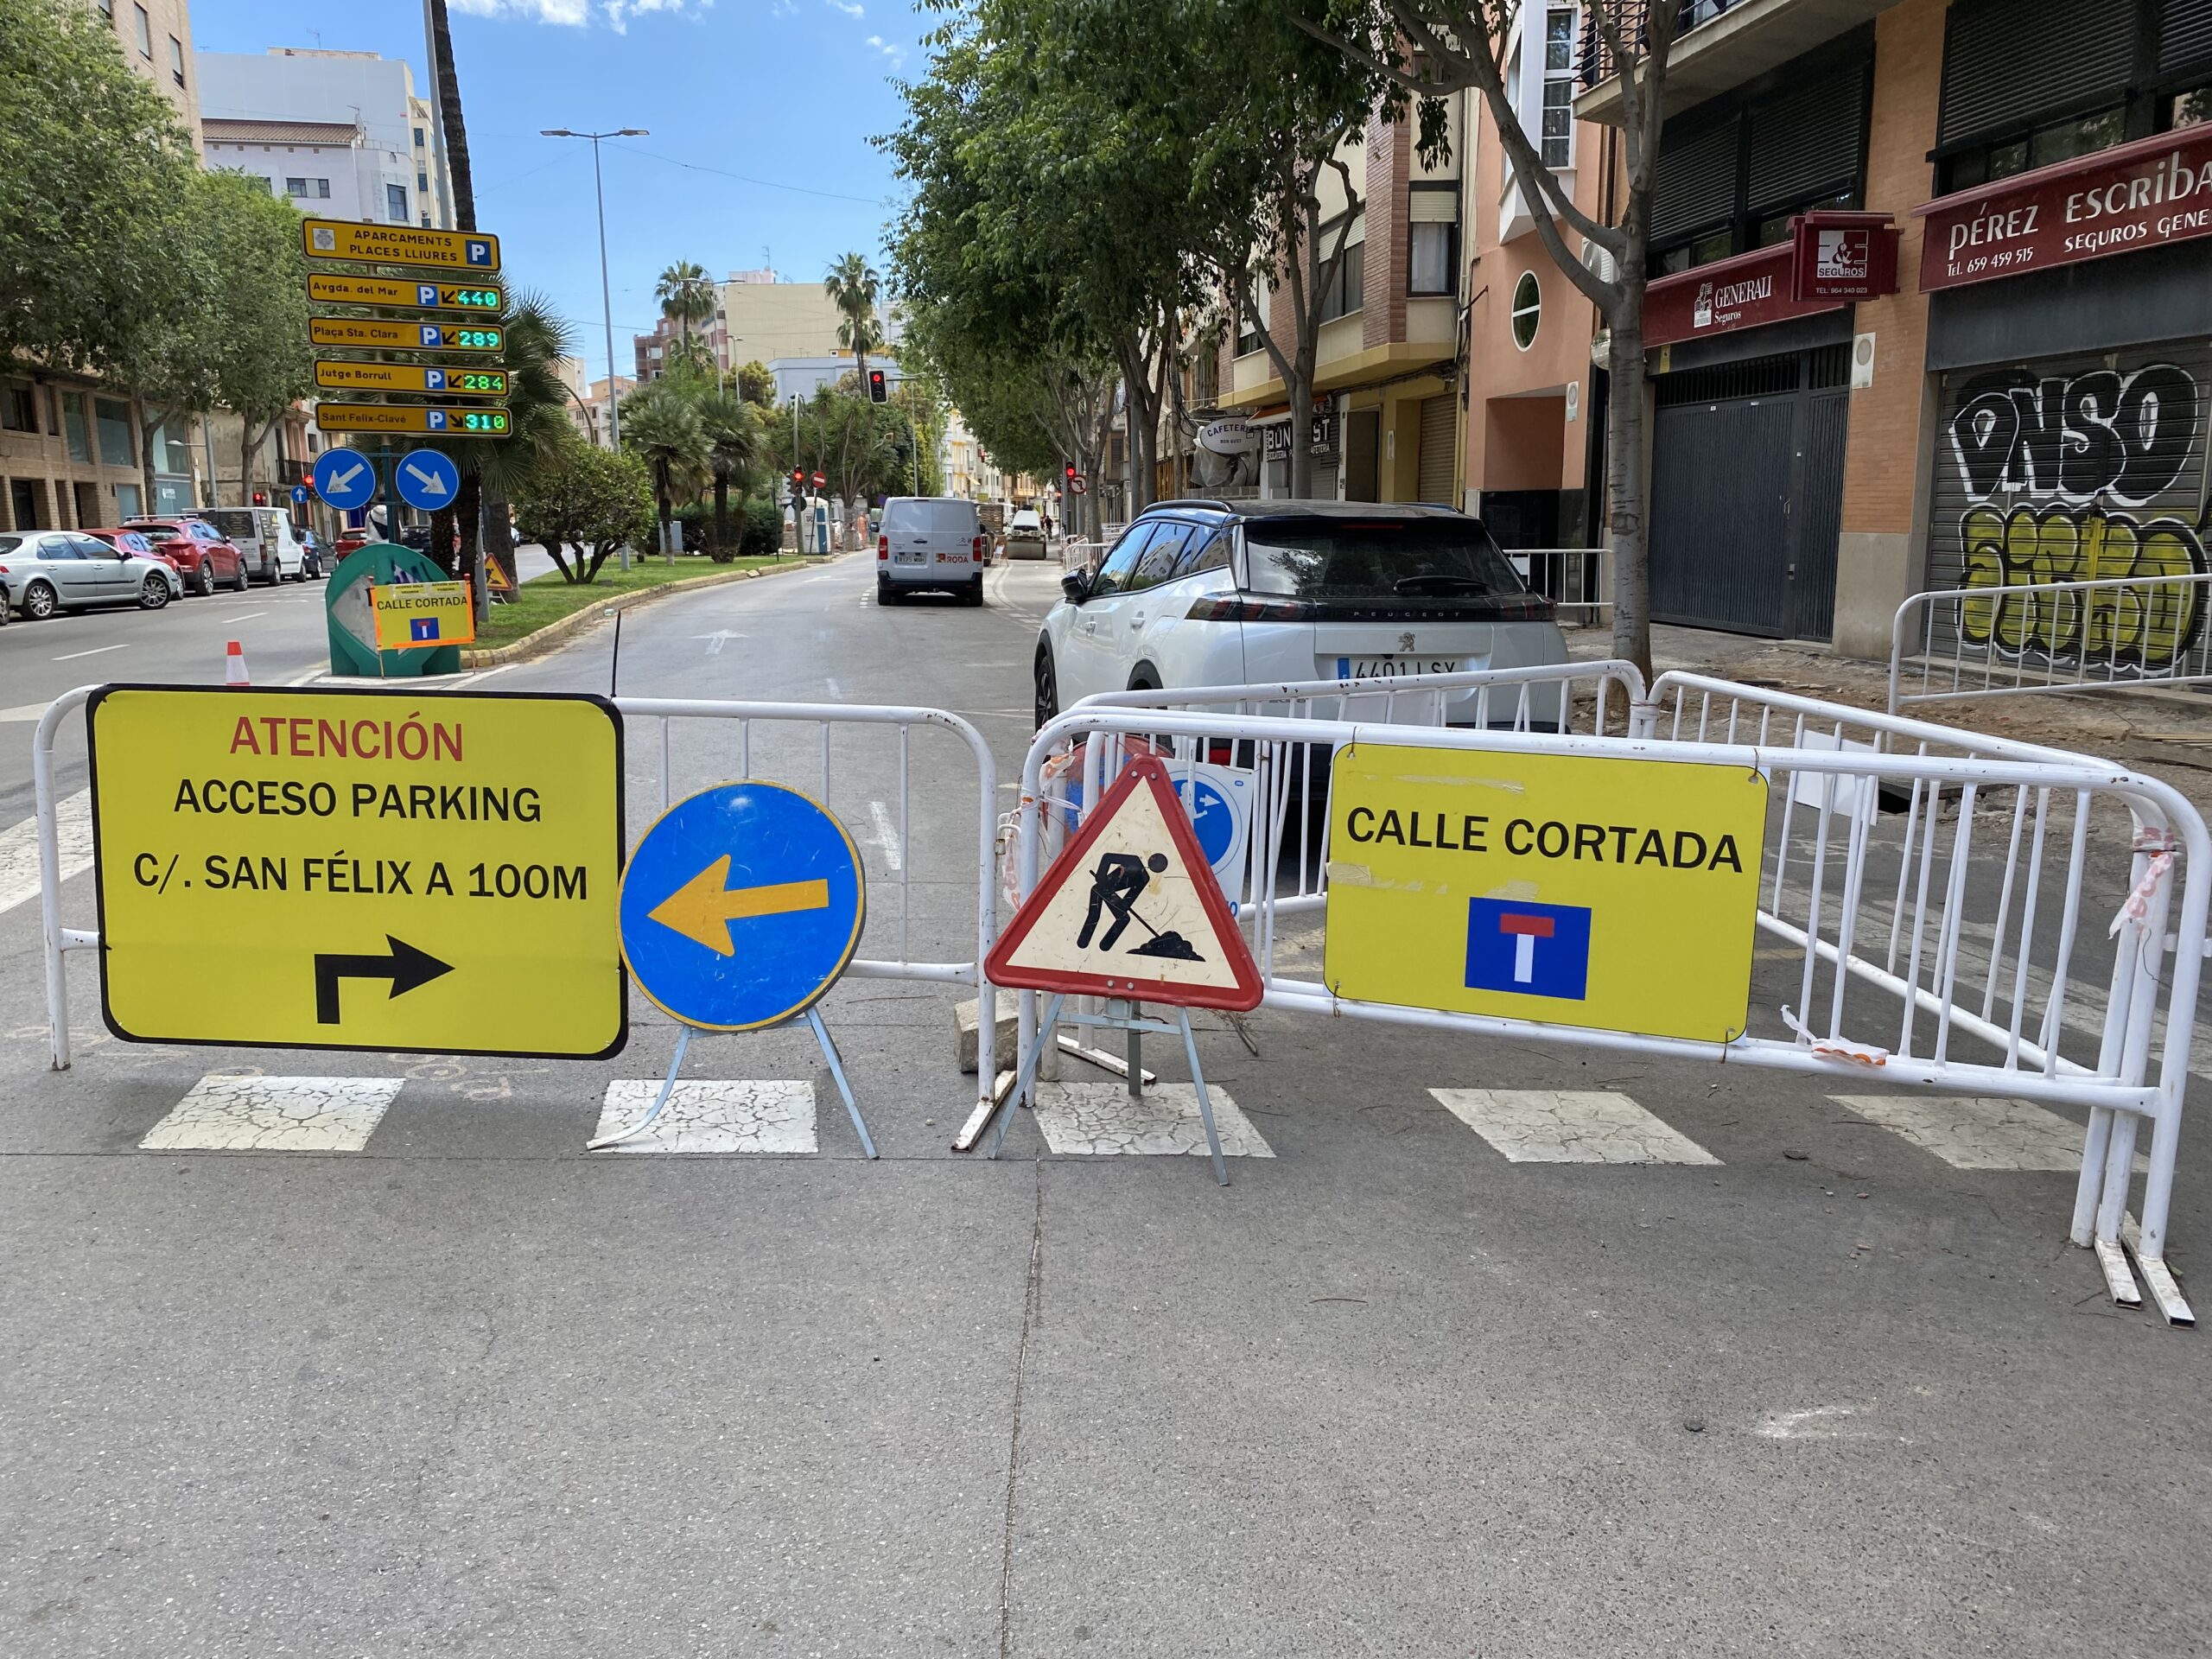 L’Ajuntament de Castelló enganya la ciutadania en incomplir els terminis promesos en les millores del Raval Sant Félix i sumir la ciutat en un caos d’obres